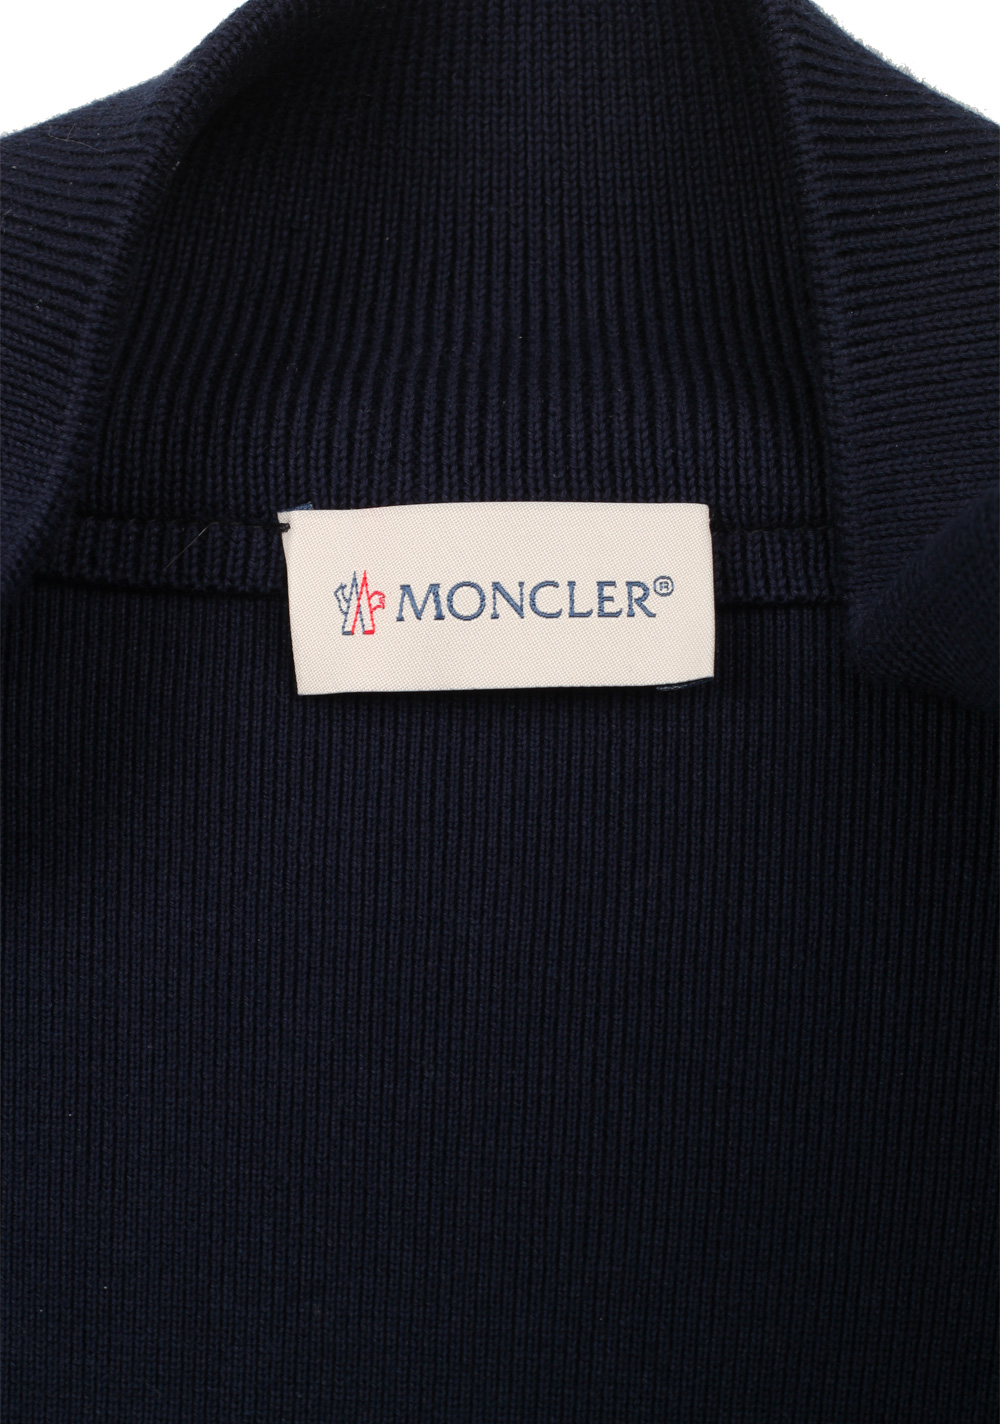 Moncler Navy Maglia Suede Cardigan Coat Size L / 50 / 40 U.S. | Costume Limité